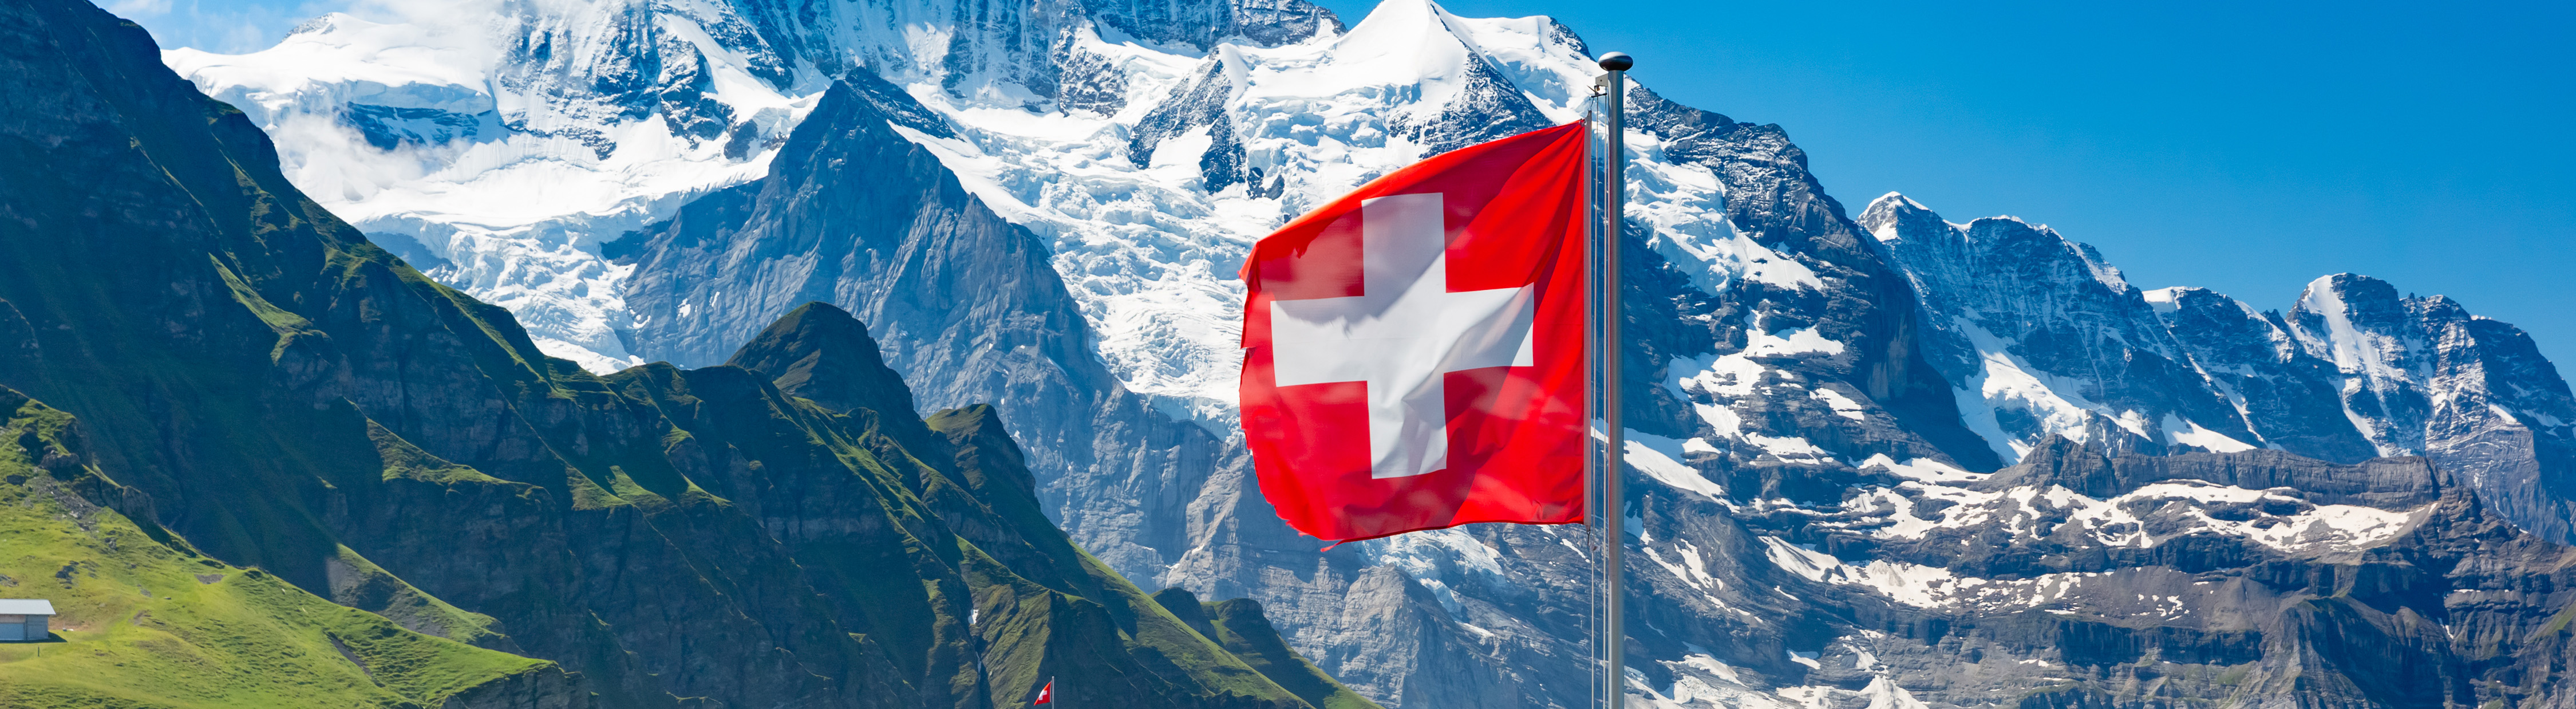 Berichtssaison: Schweizer Unternehmen legen Zahlen vor -Teil 1